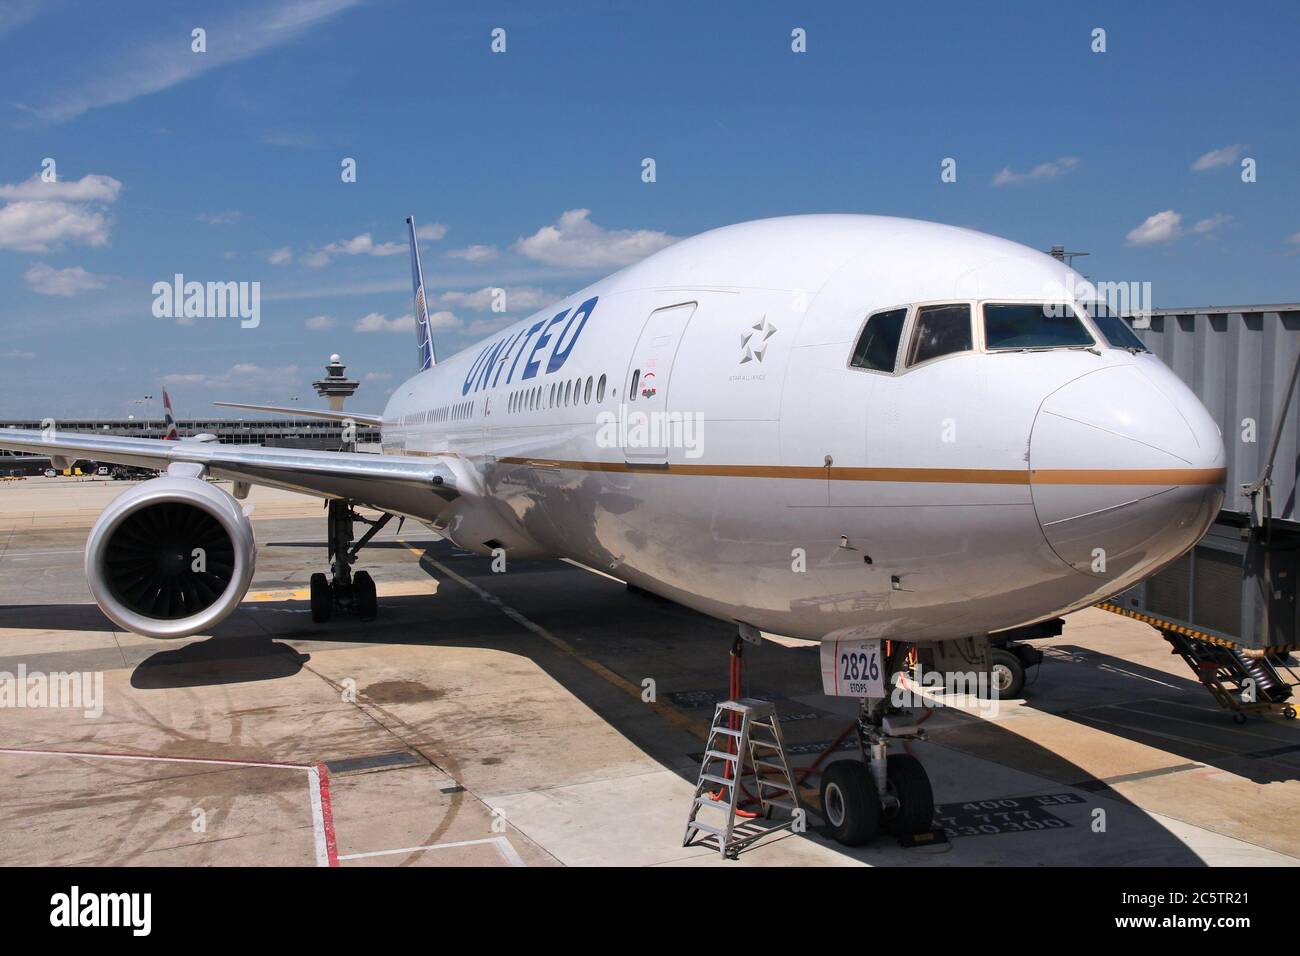 WASHINGTON, USA - 15 GIUGNO 2013: United Airlines Boeing 777-200 all'aeroporto internazionale Dulles di Washington, DC, USA. La compagnia aerea aveva 400 milioni di Stati Uniti Foto Stock